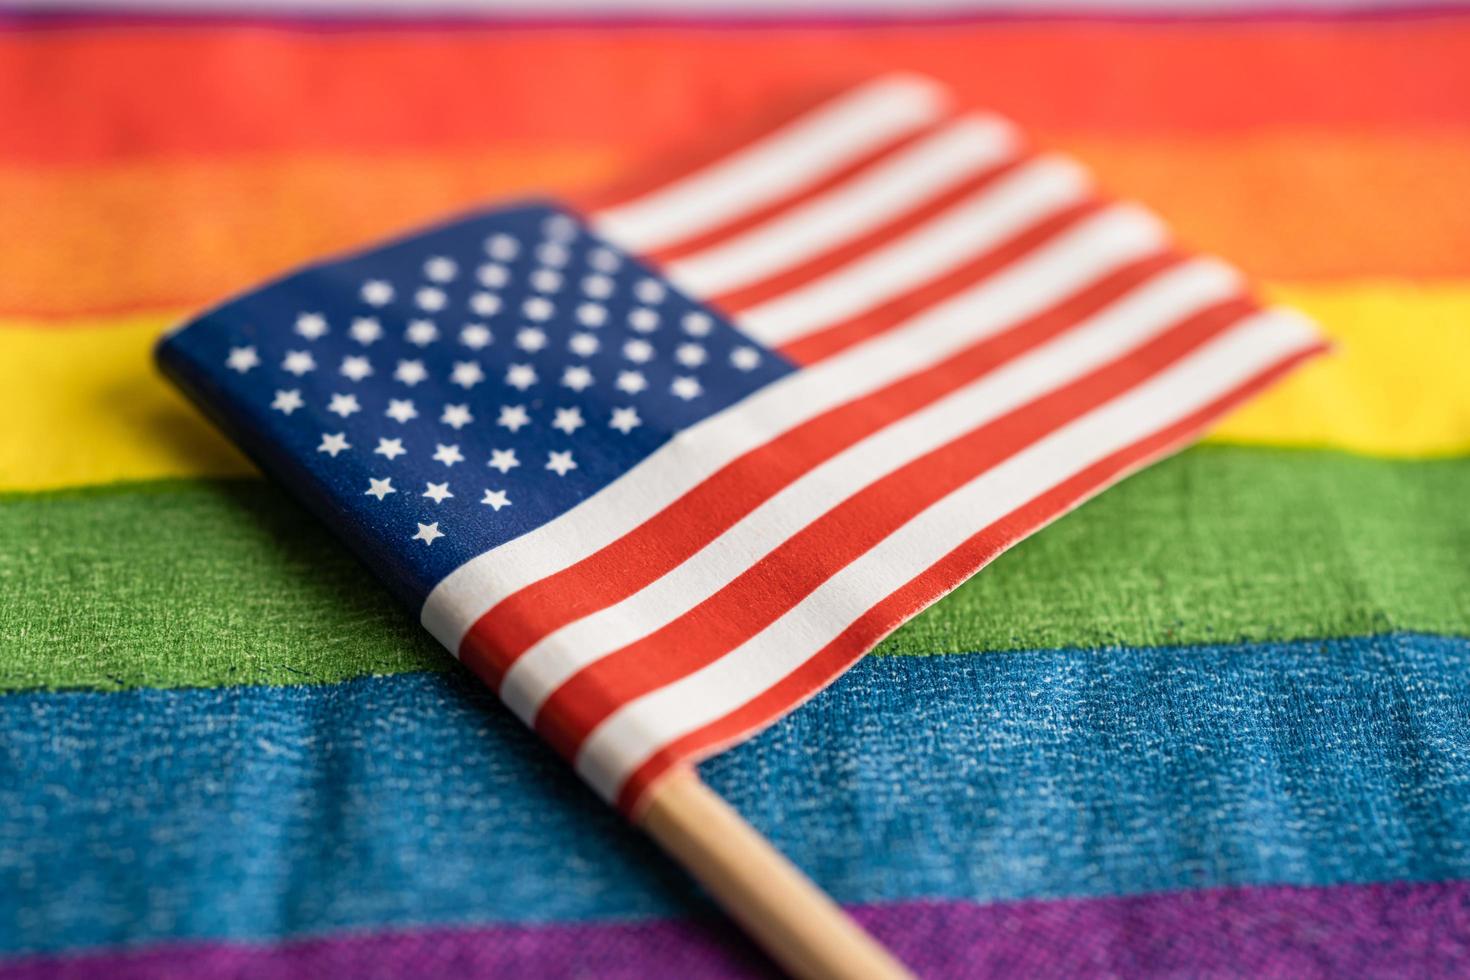 bandeira dos eua américa no fundo do arco-íris símbolo do movimento social do mês do orgulho gay lgbt a bandeira do arco-íris é um símbolo de lésbicas, gays, bissexuais, transgêneros, direitos humanos, tolerância e paz. foto